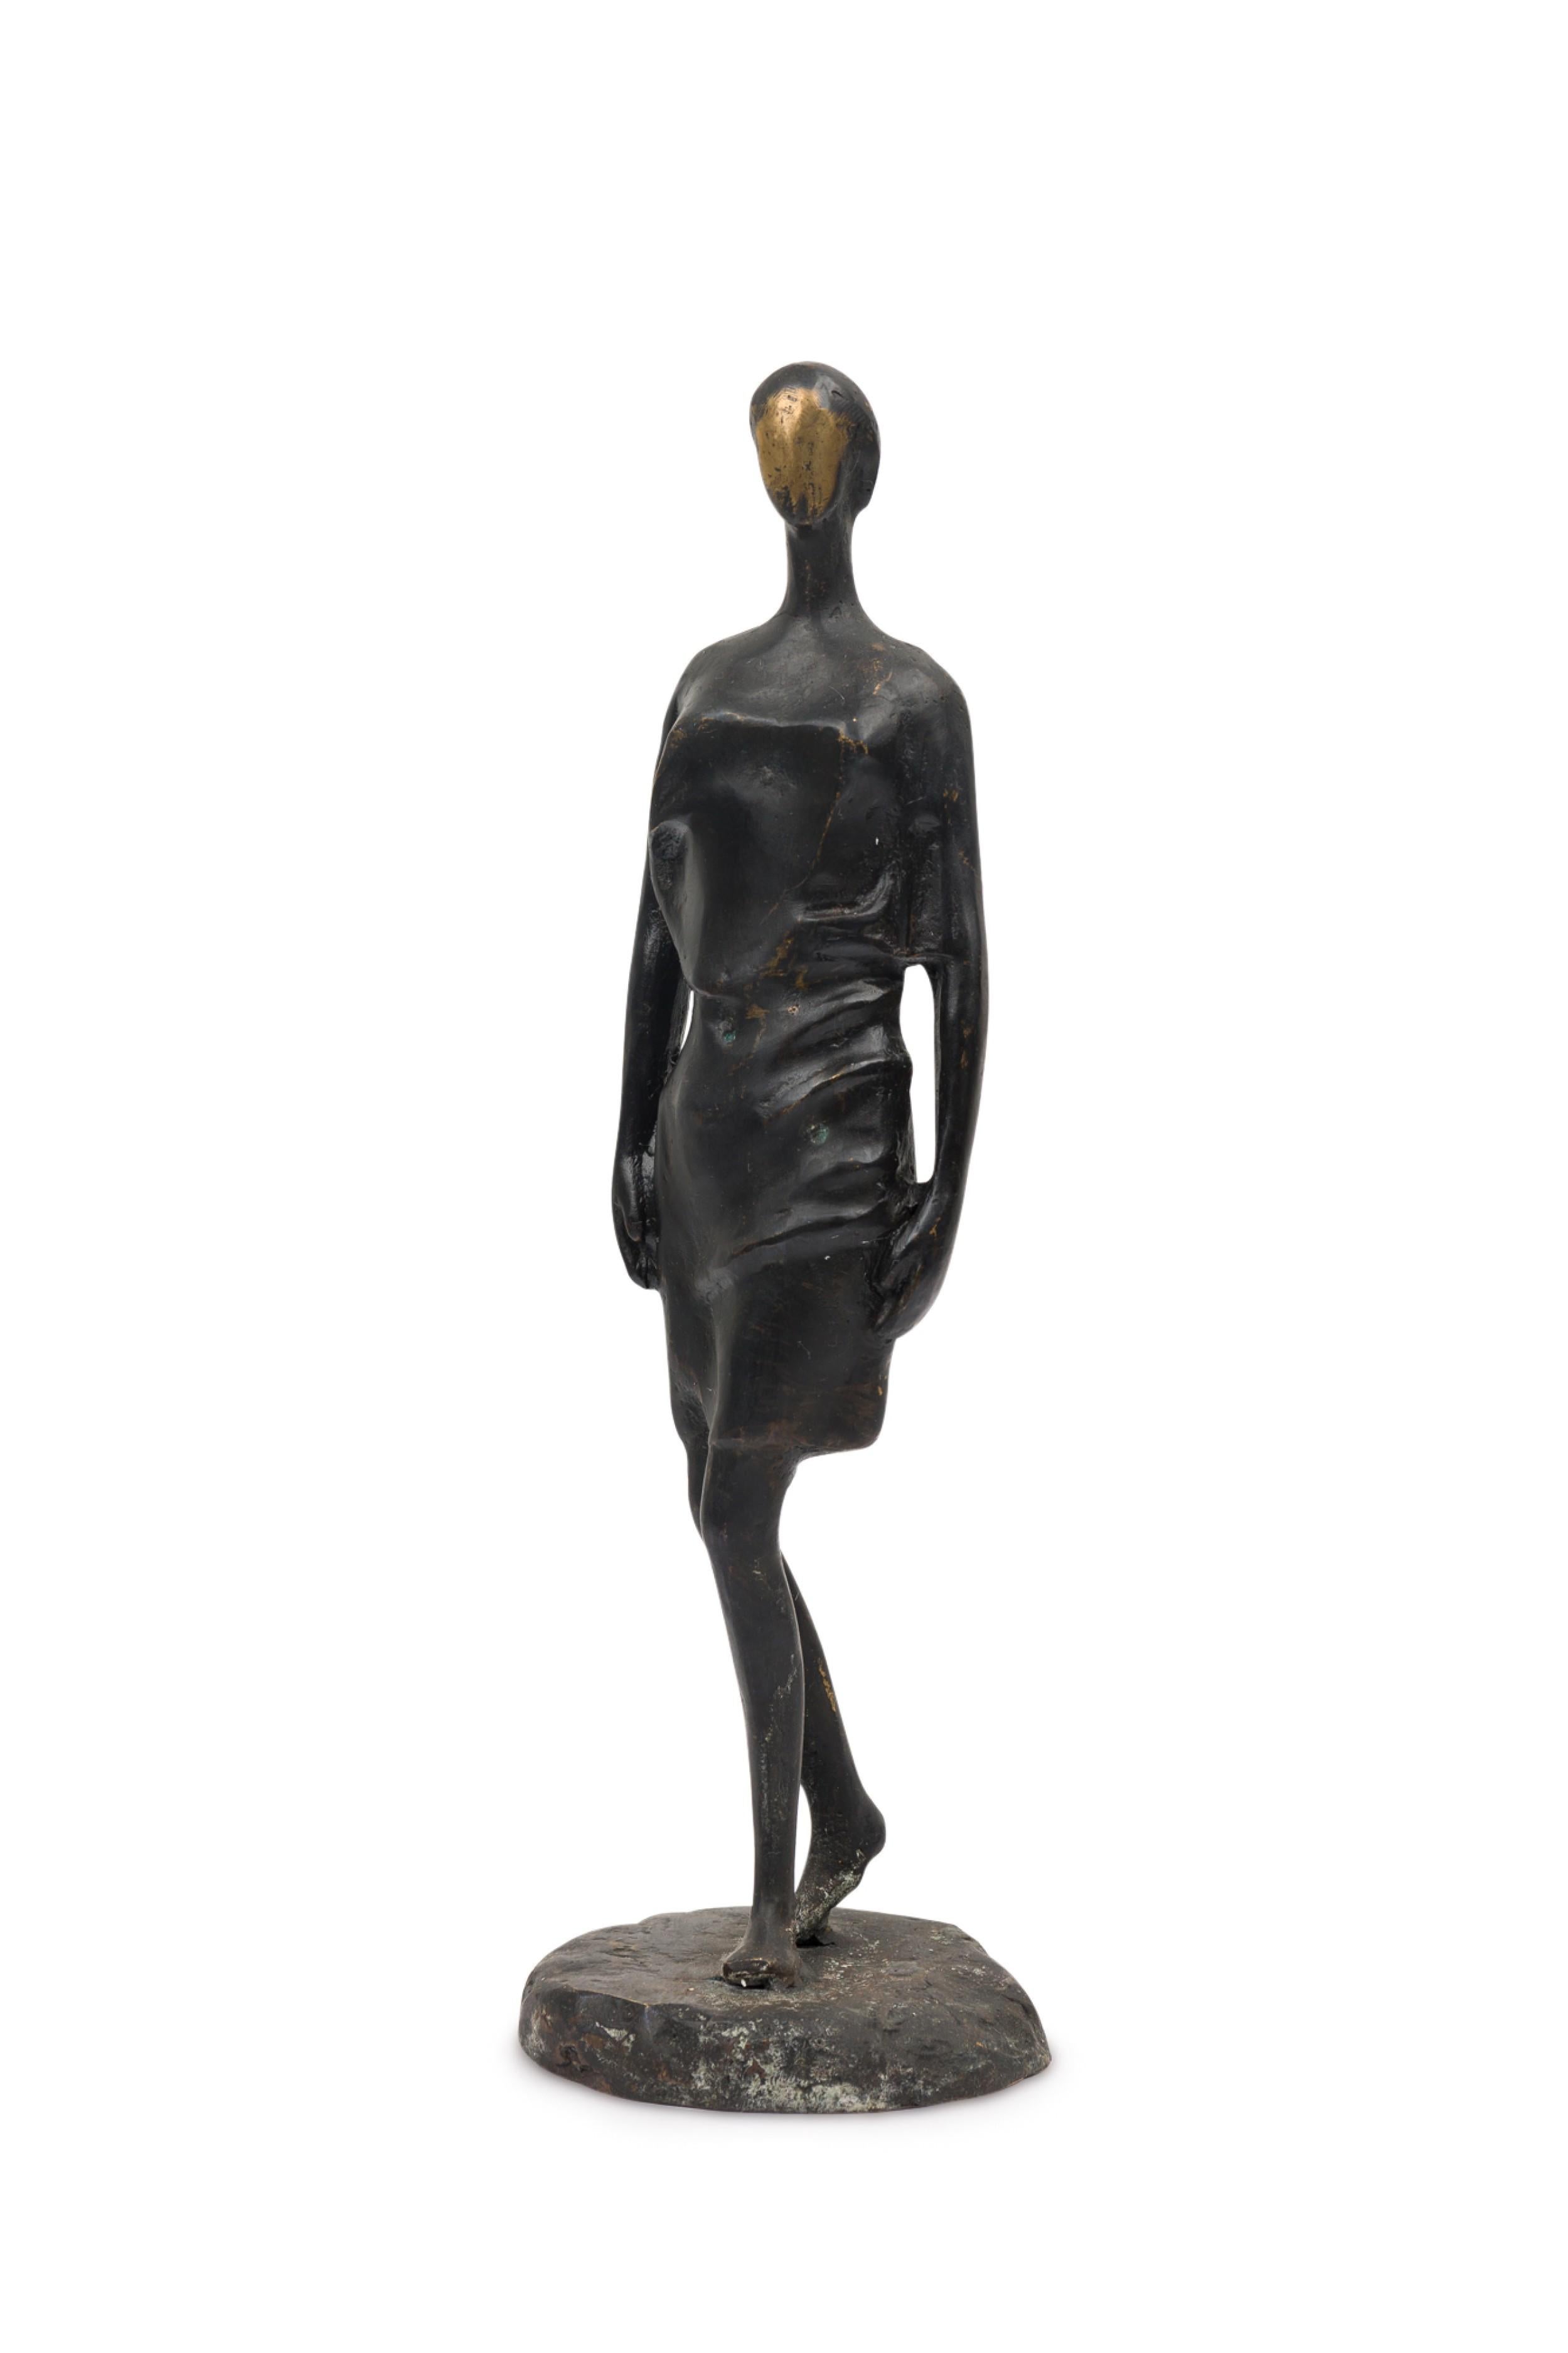 Sculpture figurative contemporaine en bronze forgé à la main, d'inspiration brutaliste, représentant une figure féminine marchant, finie dans une patine ébonisée. (PRIX CHACUN) (